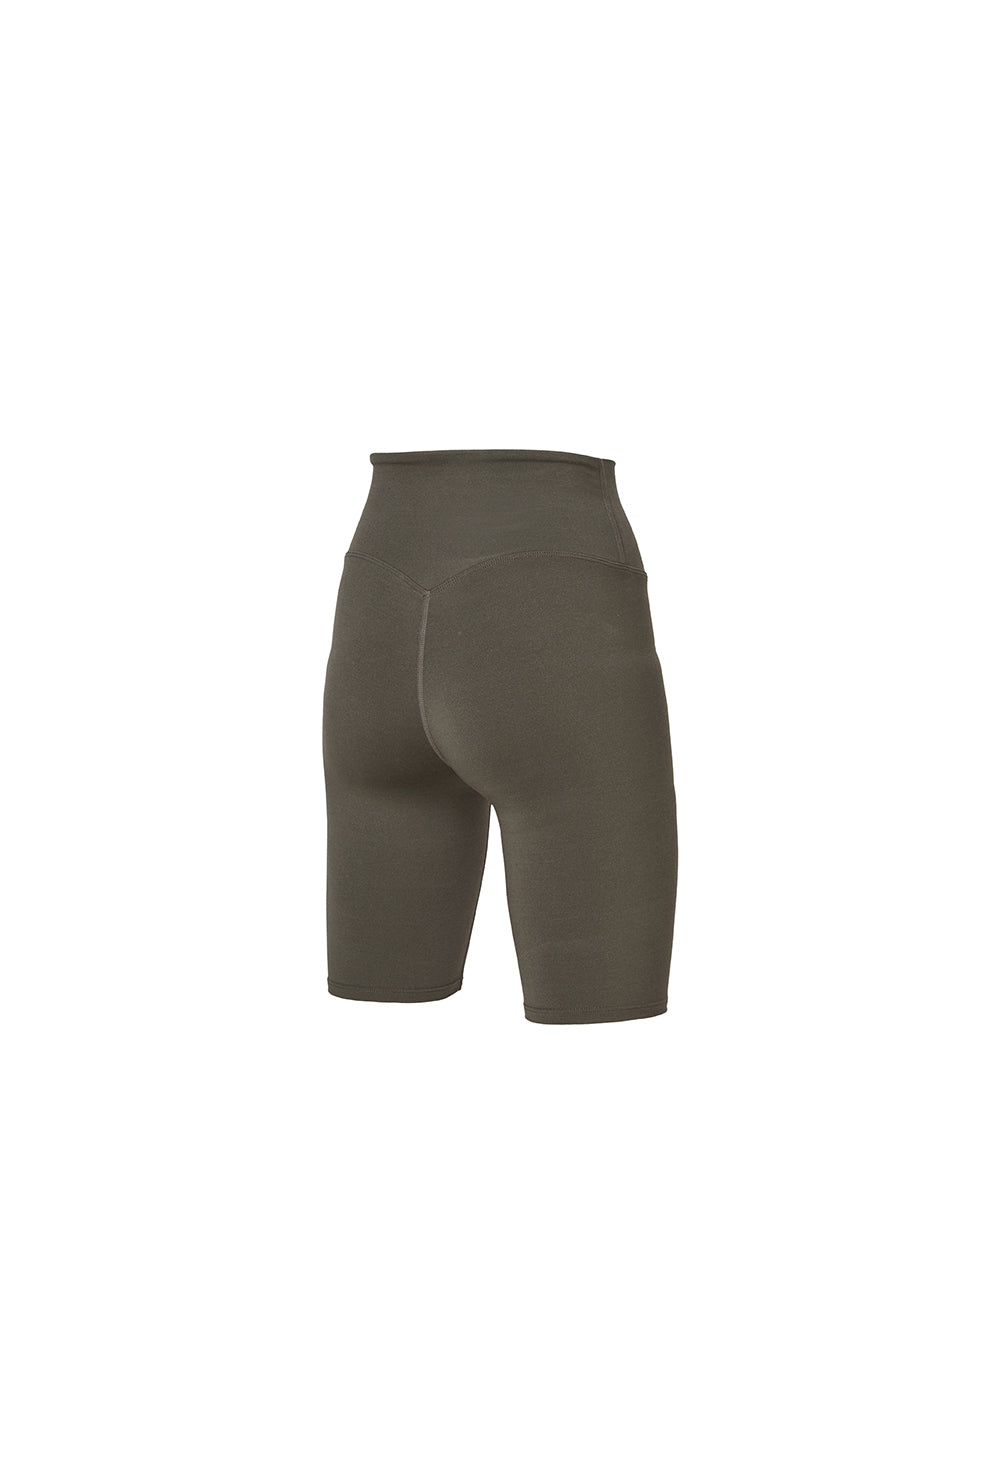 XELLA Intention 5 Biker Shorts - Grayish Khaki